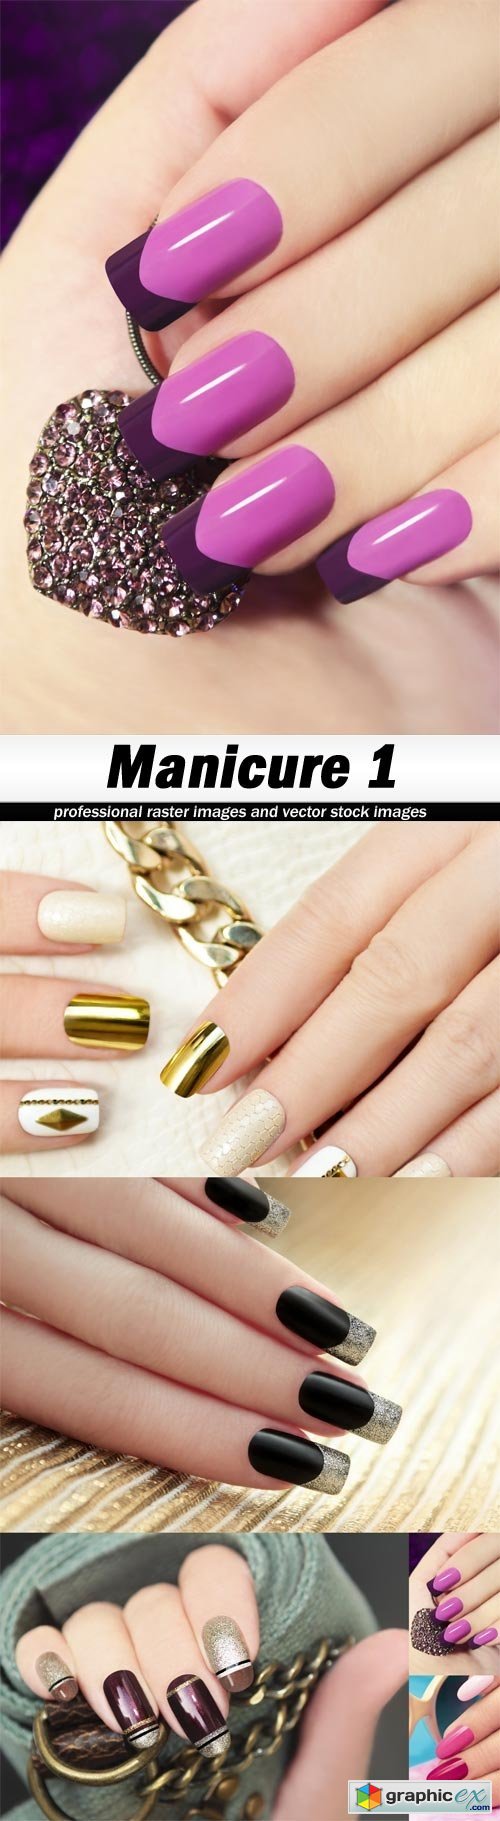 Manicure 1-5xJPEGs